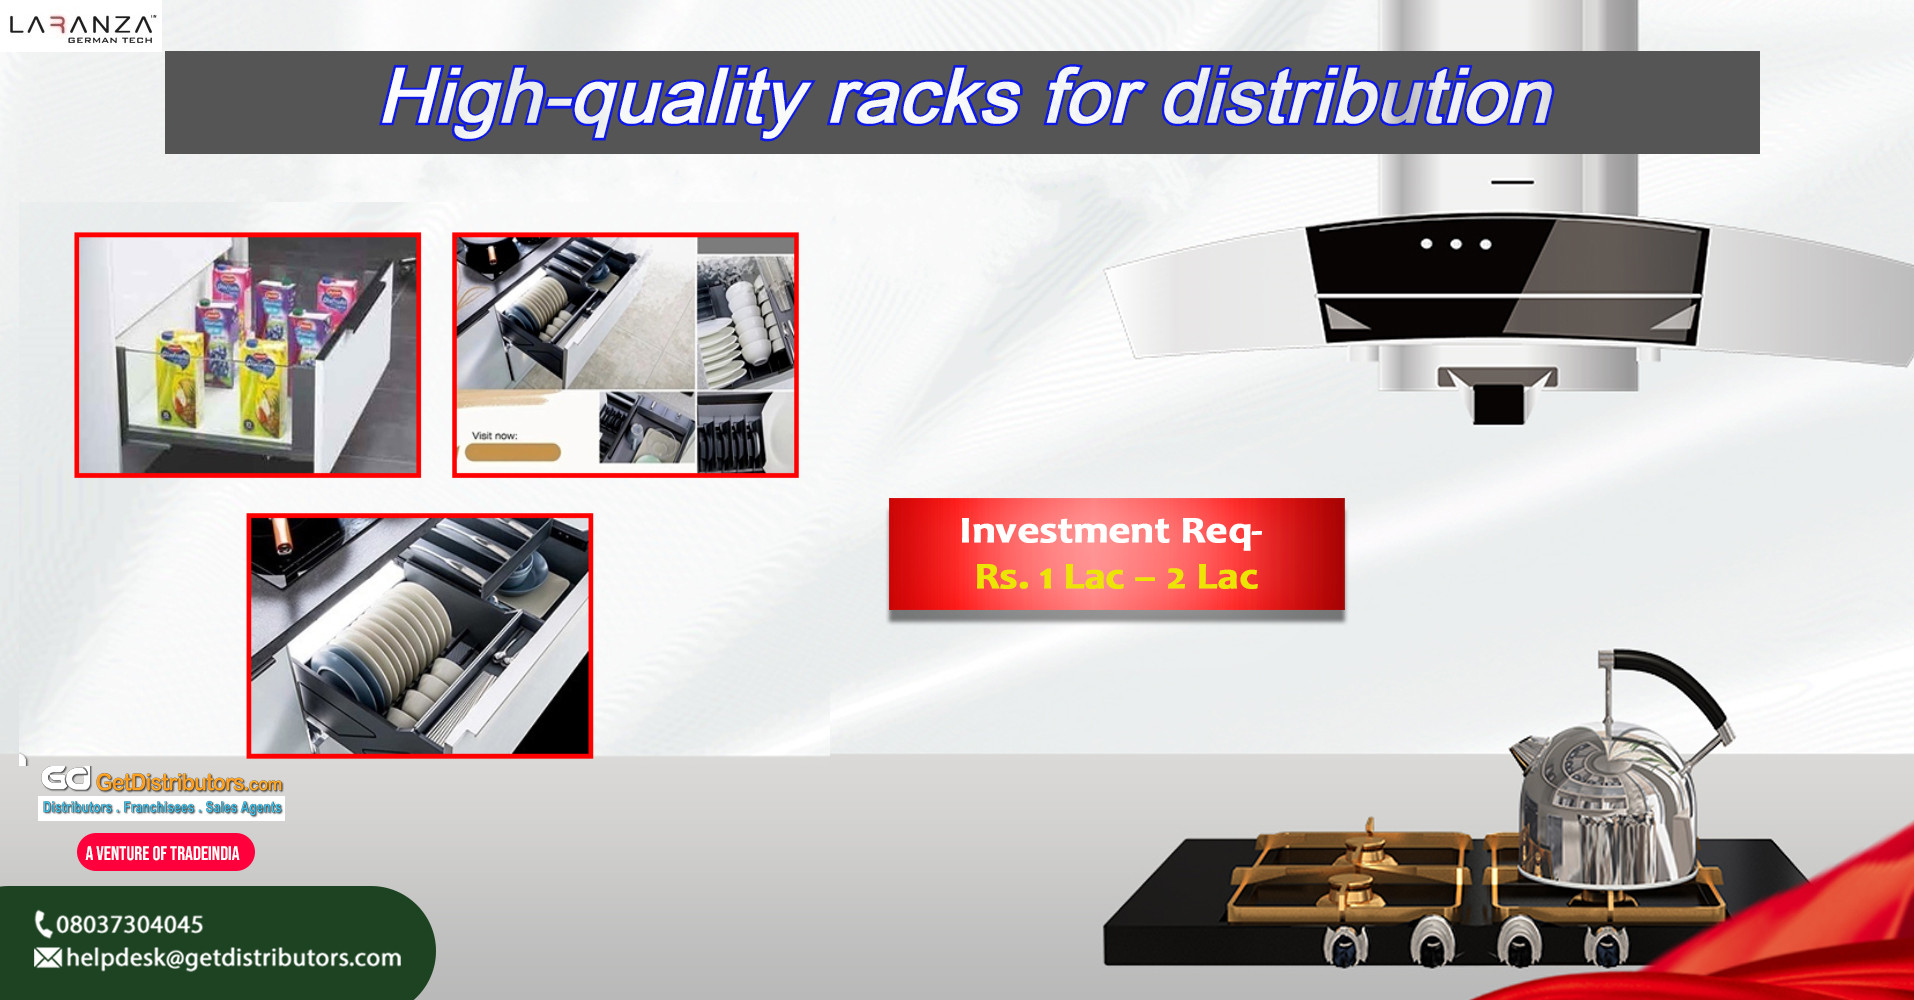 High-quality racks for distribution